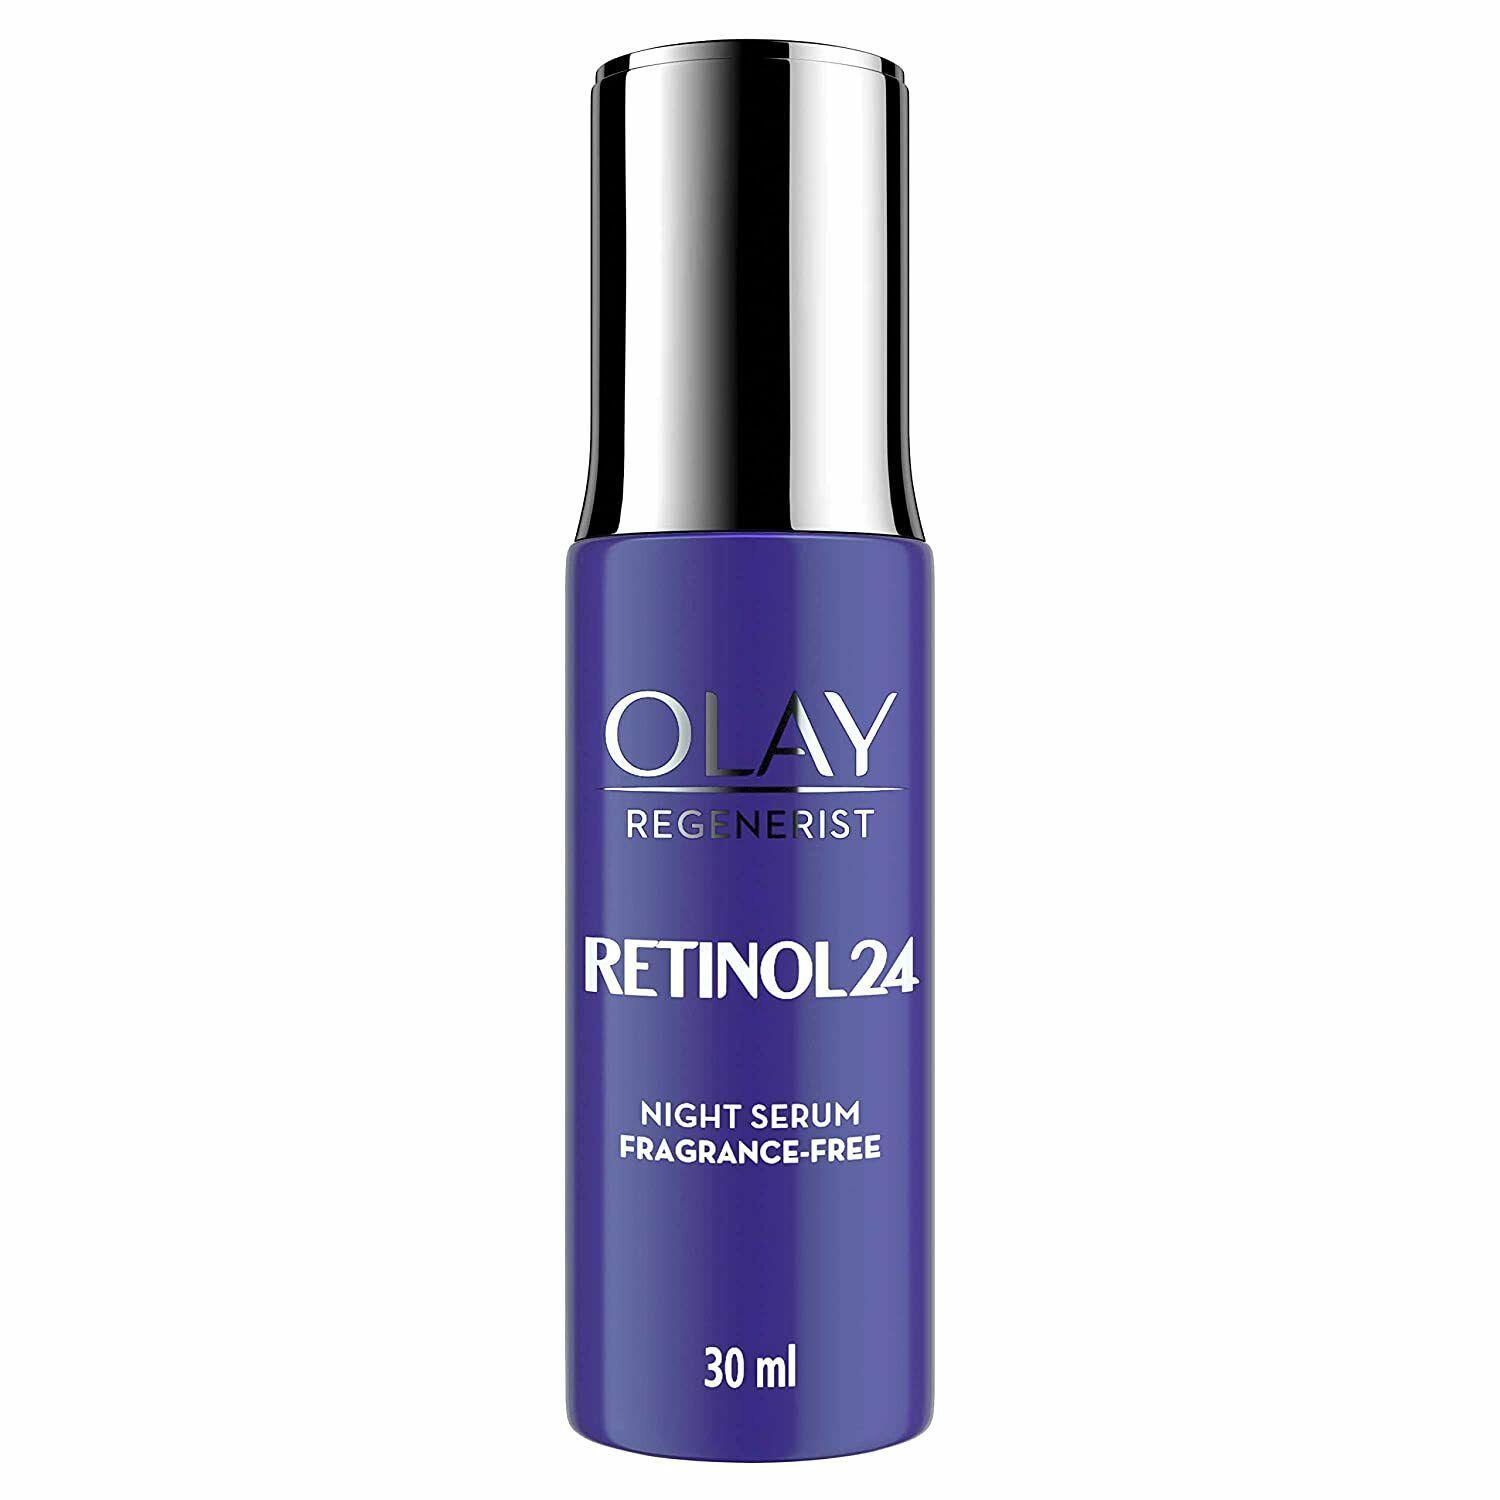 Olay Night Serum: Regenerist Retinol 24 Serum, 30 ml free shipping